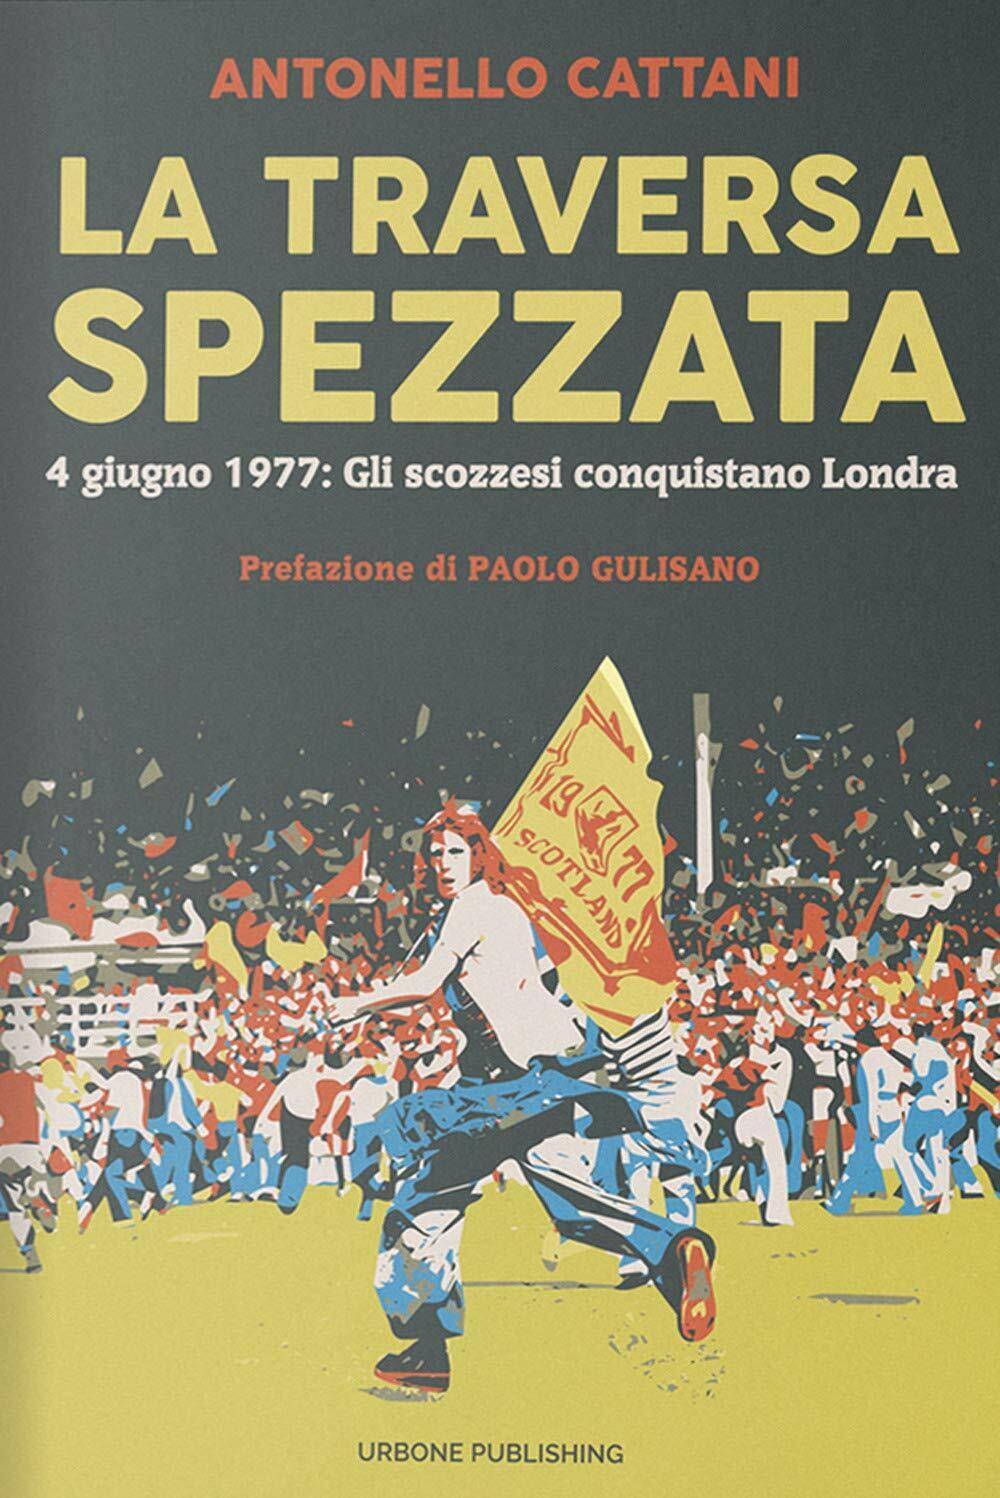 La traversa spezzata - Antonello Cattani -Gianluca Iuorio Urbone Publishing,2020 libro usato